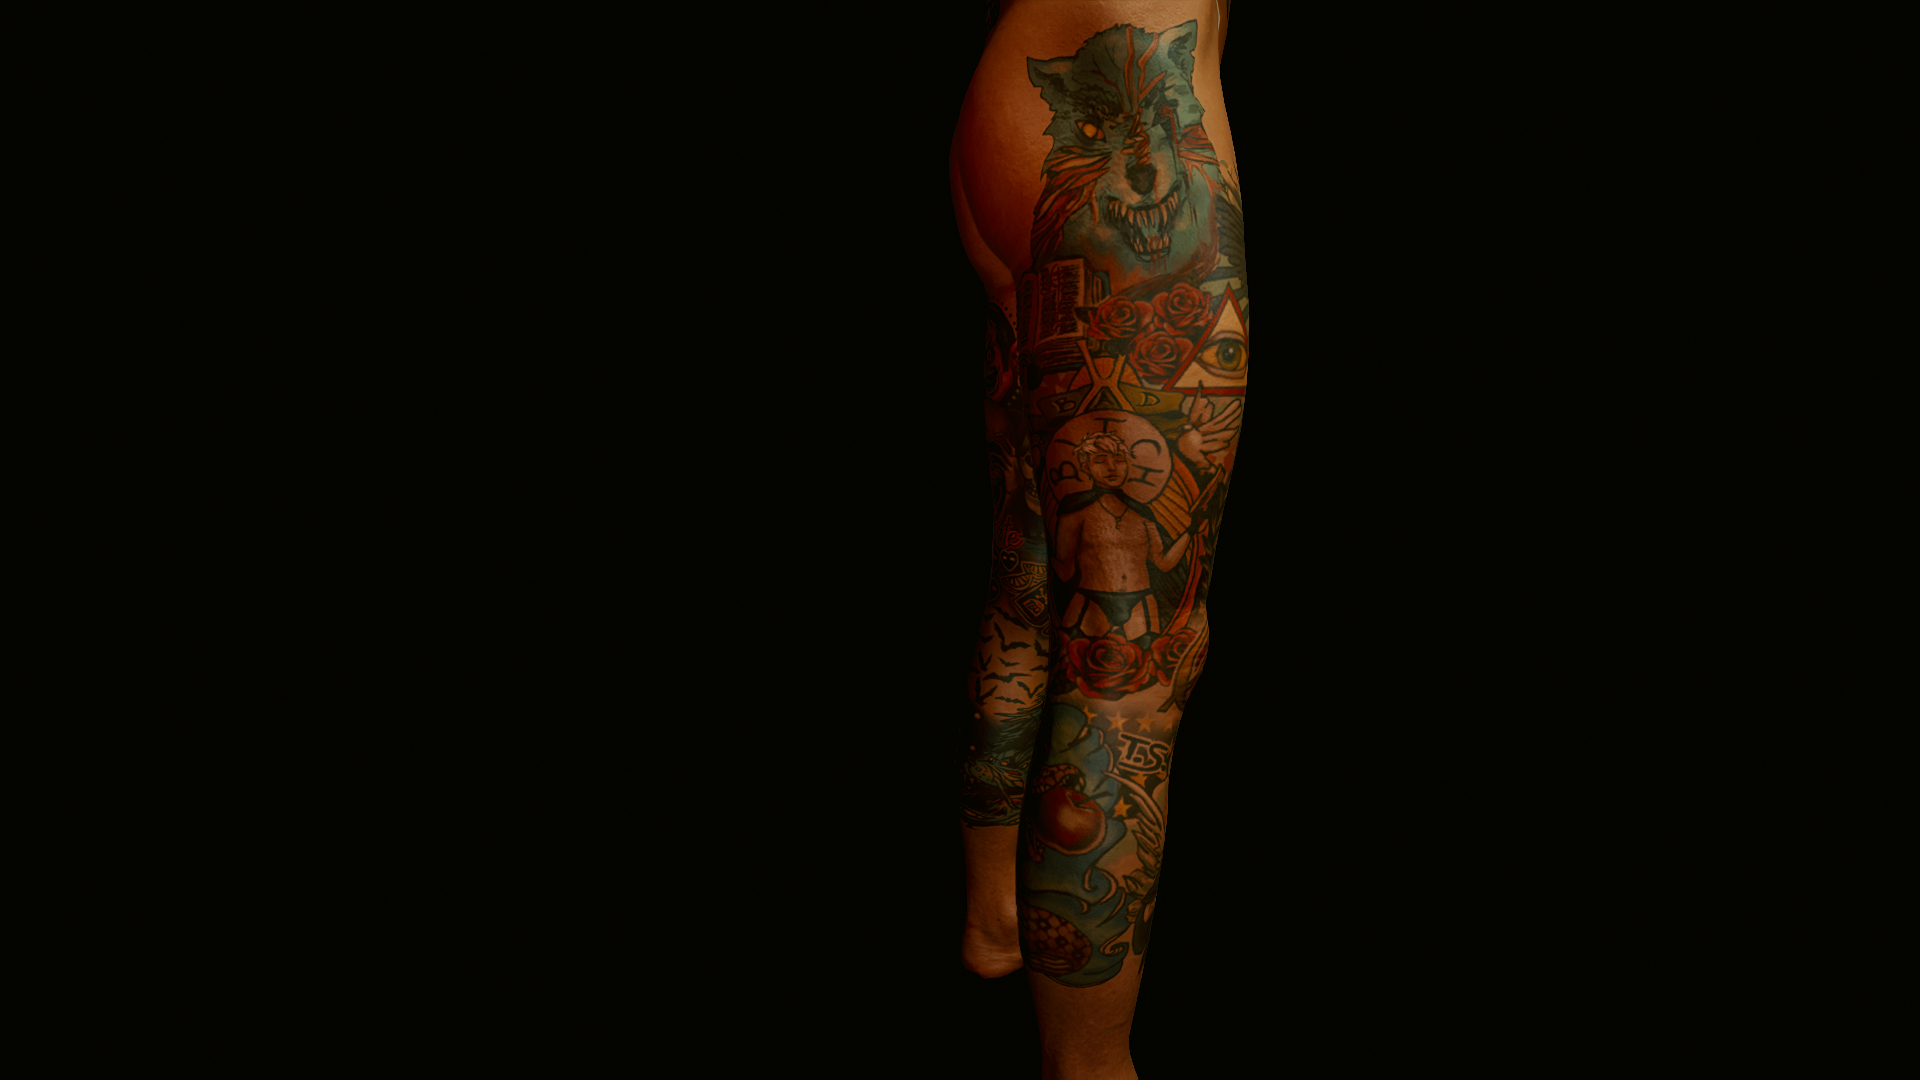 1 Cyberpunk 2077 tattoo  Worlds Top Tattoo Artists  Facebook